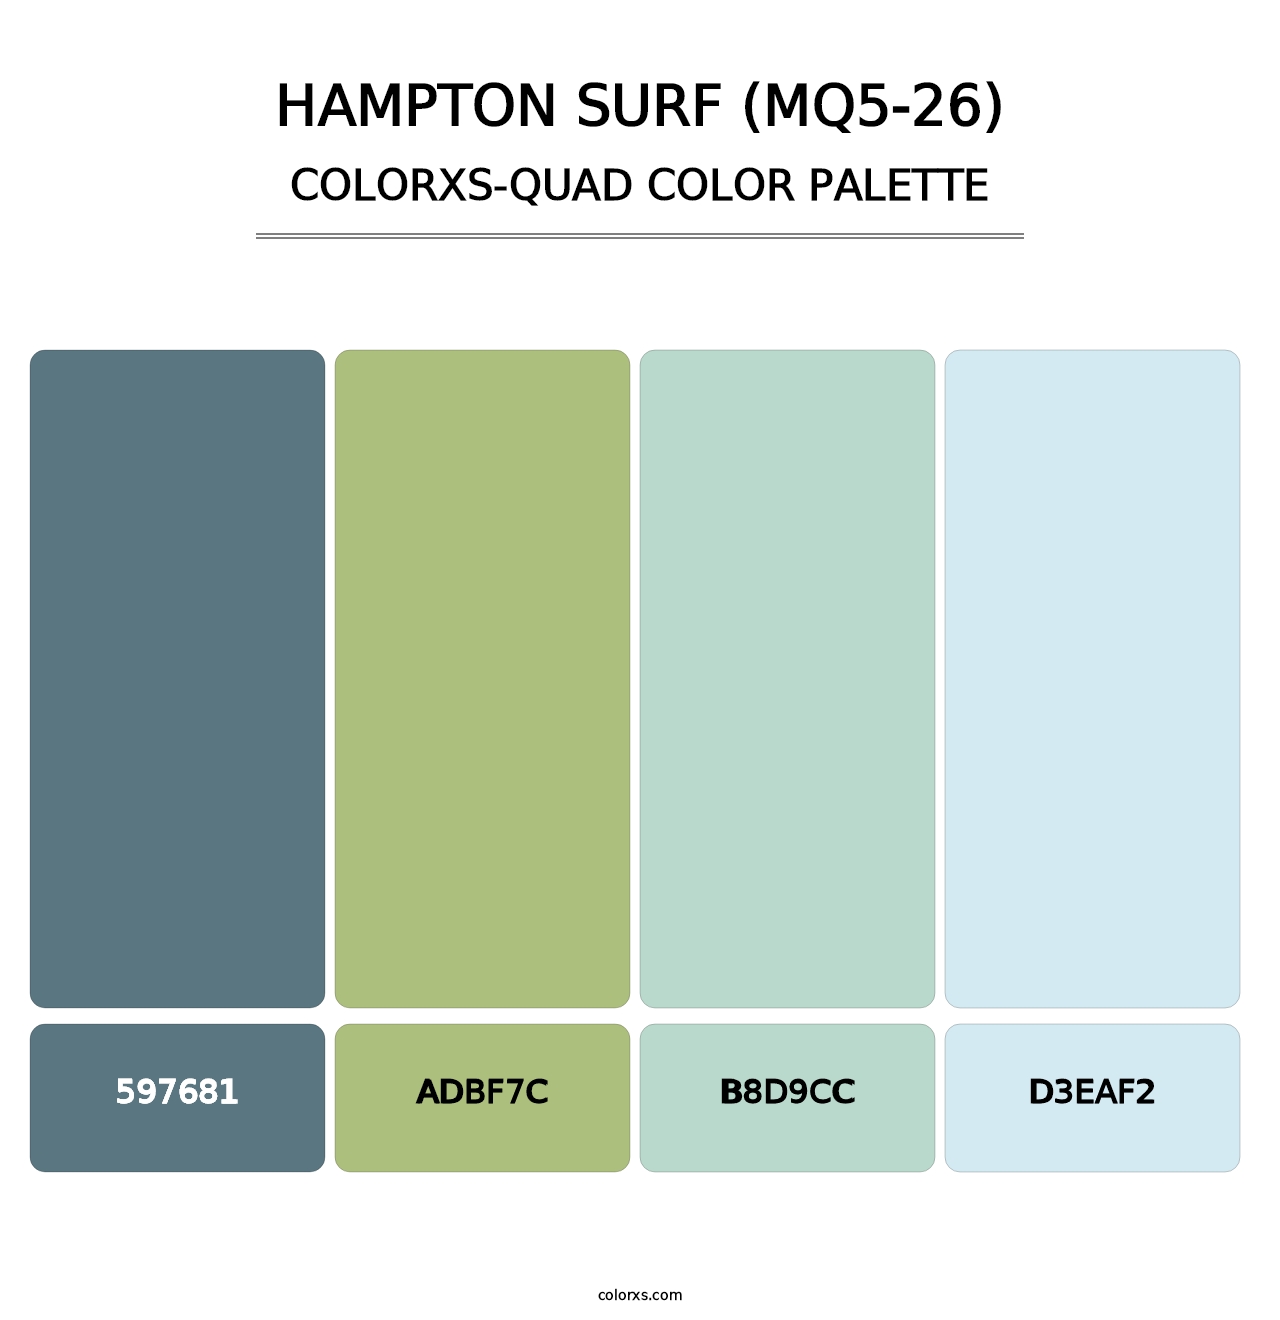 Hampton Surf (MQ5-26) - Colorxs Quad Palette